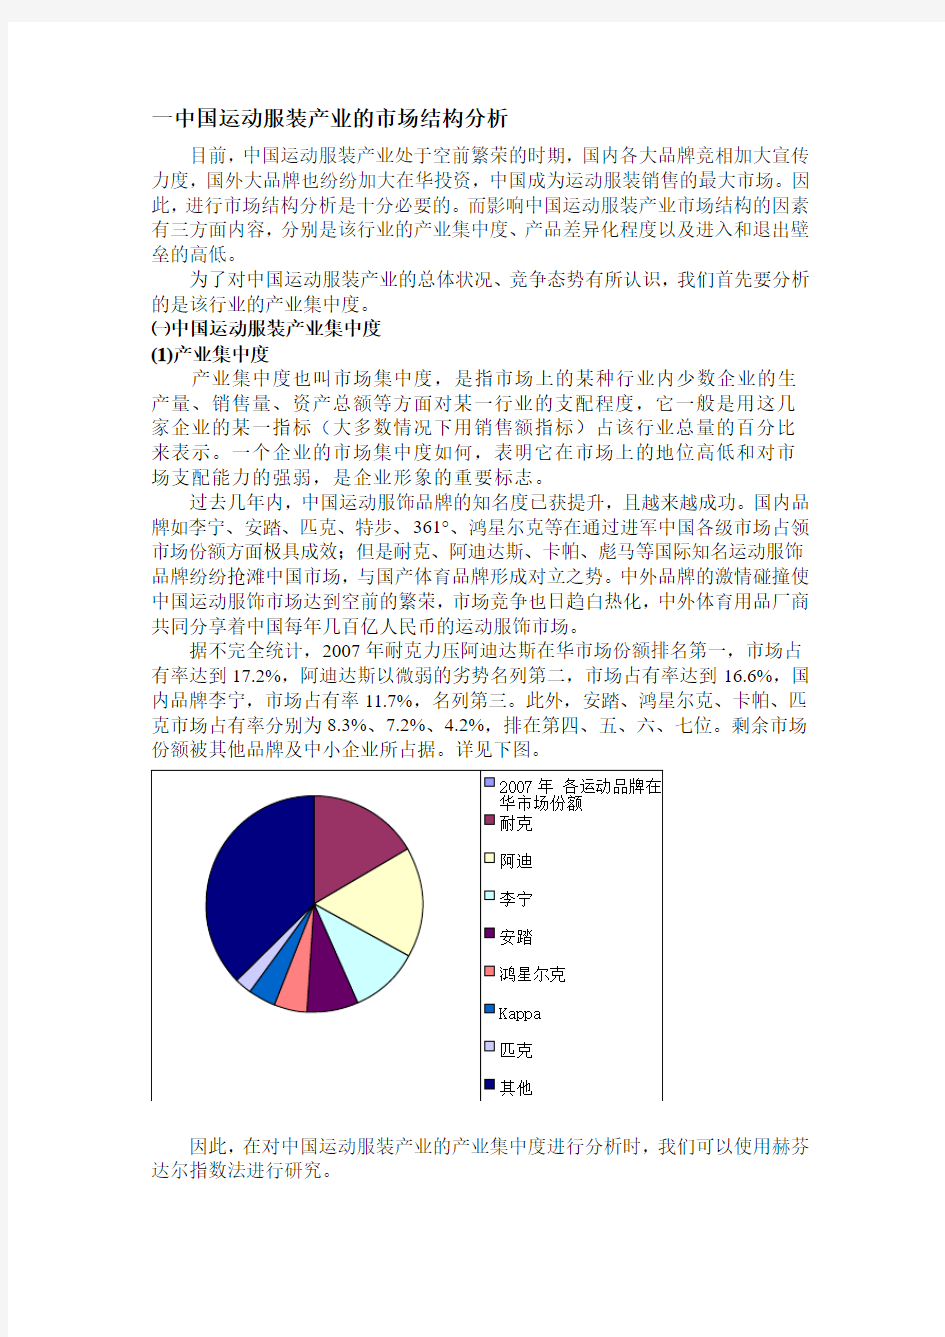 中国运动服装产业的产业结构分析